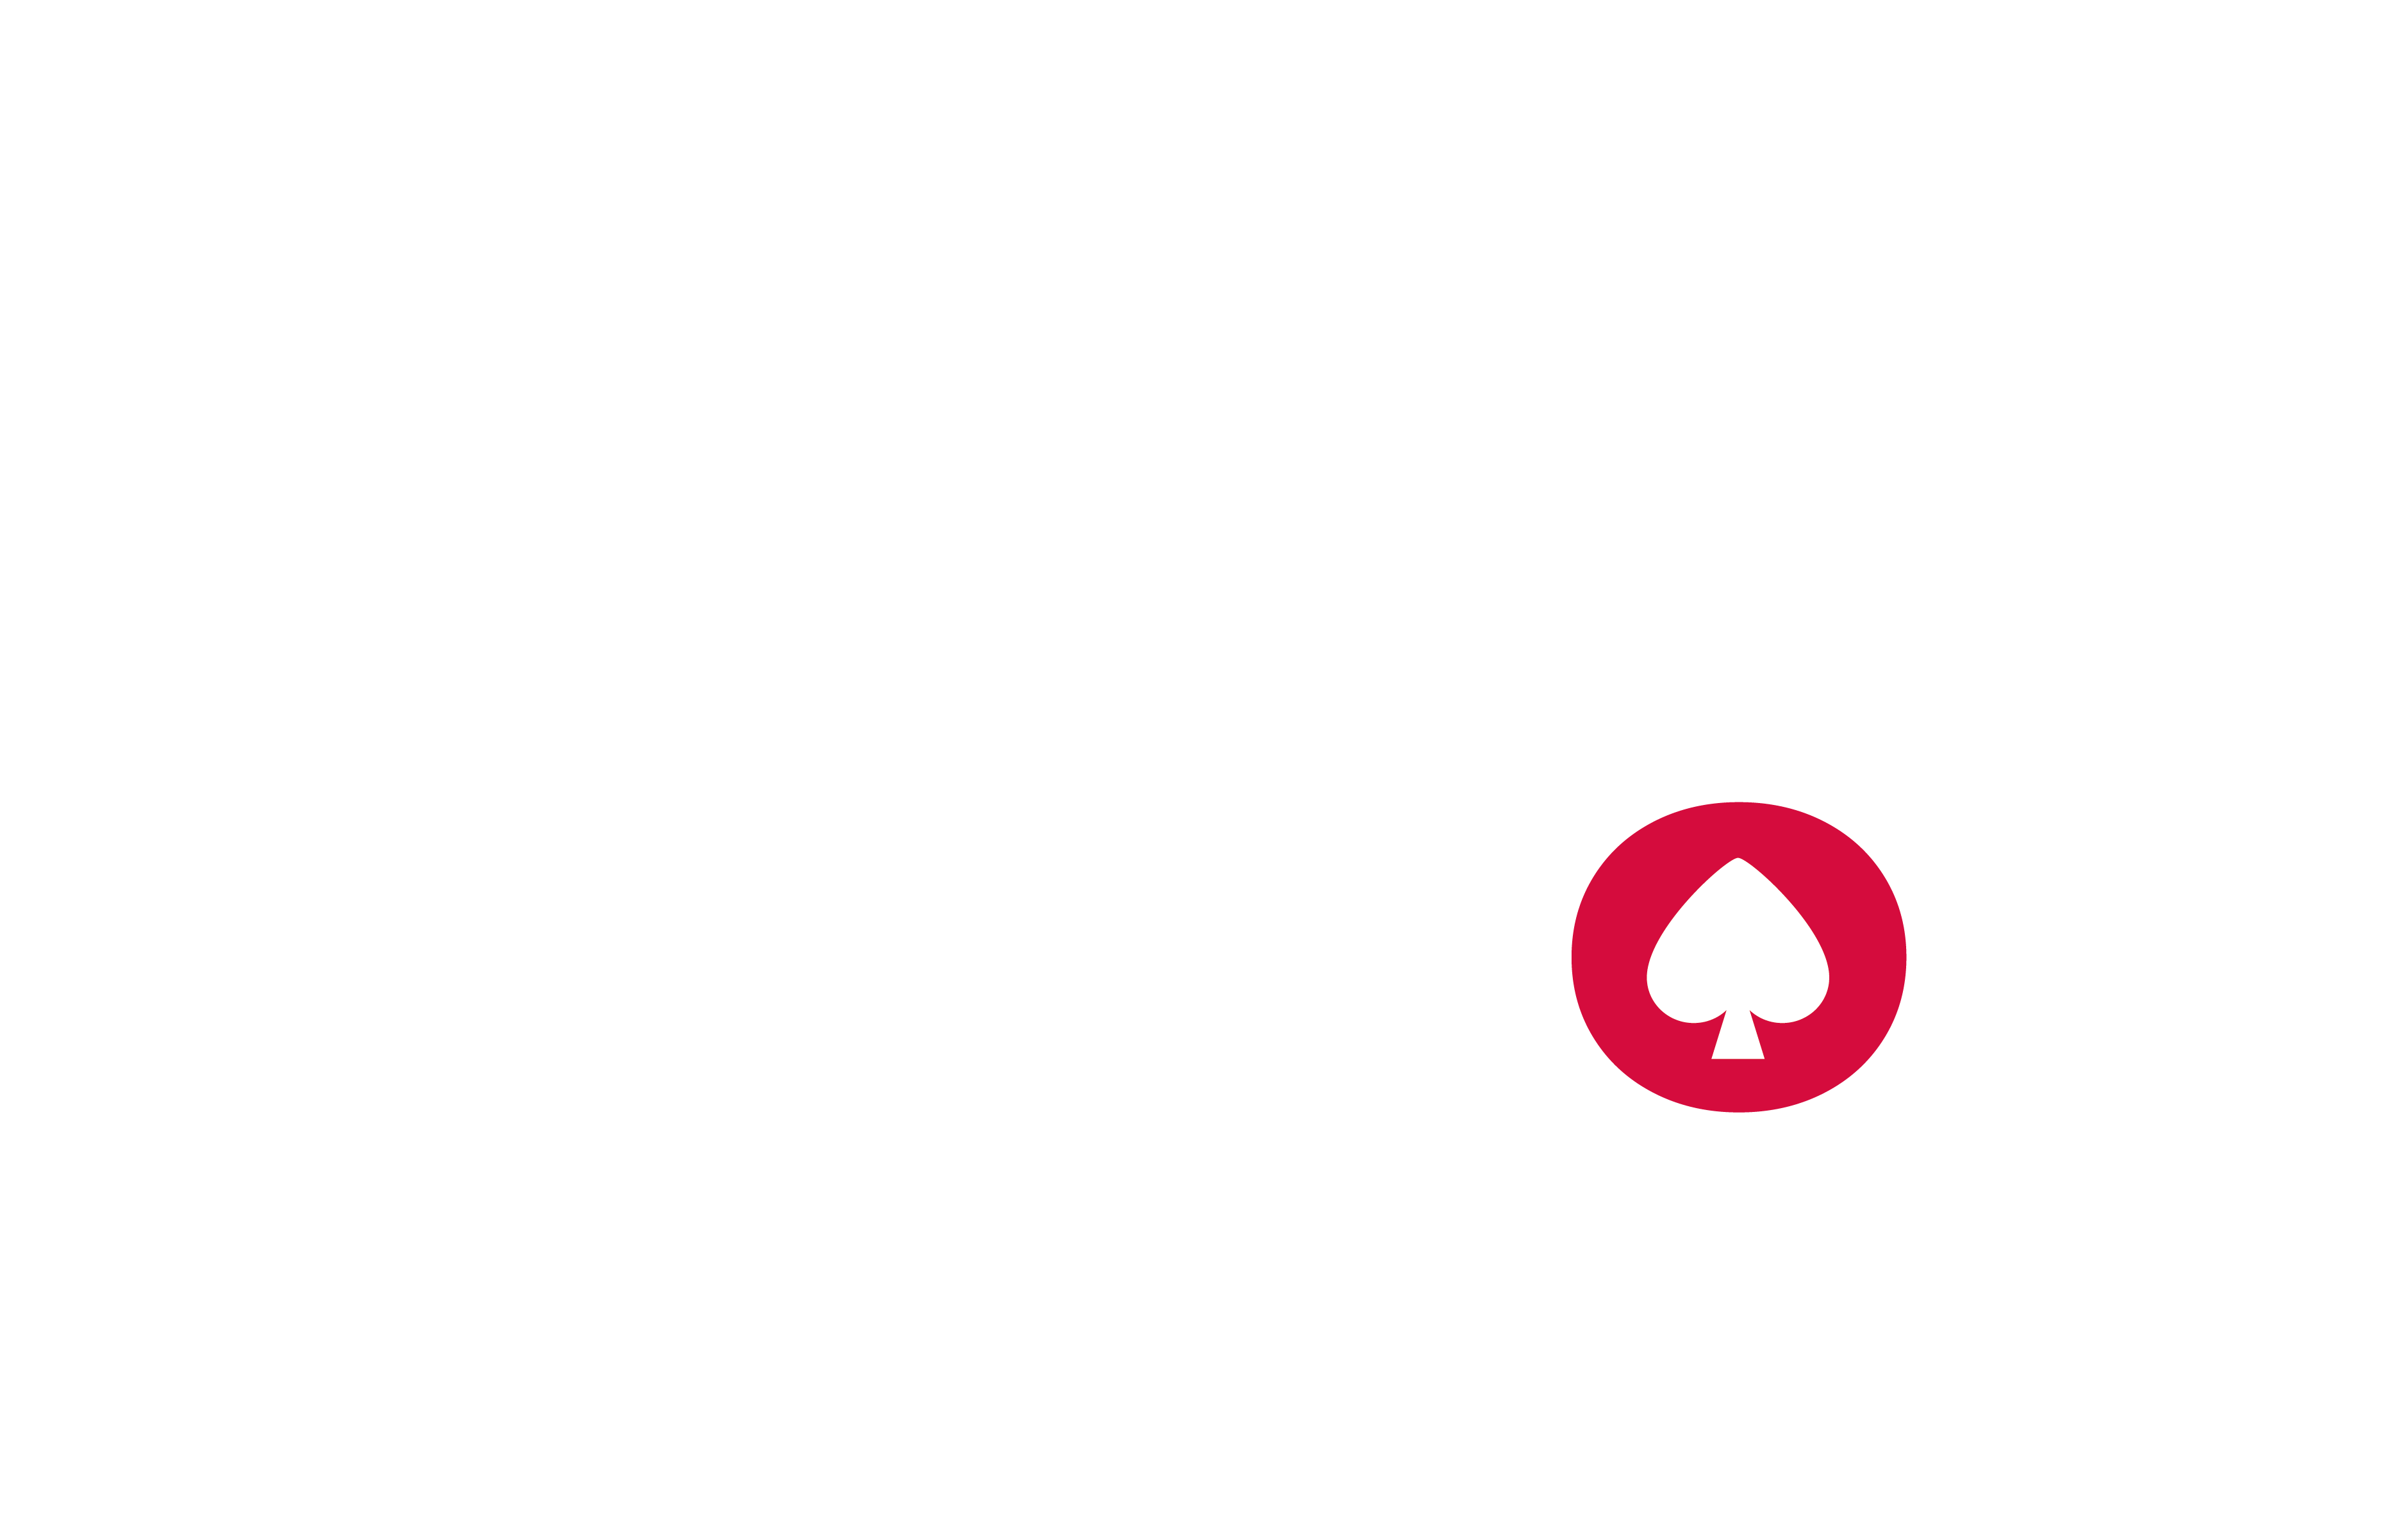 CasinosCrypto.com